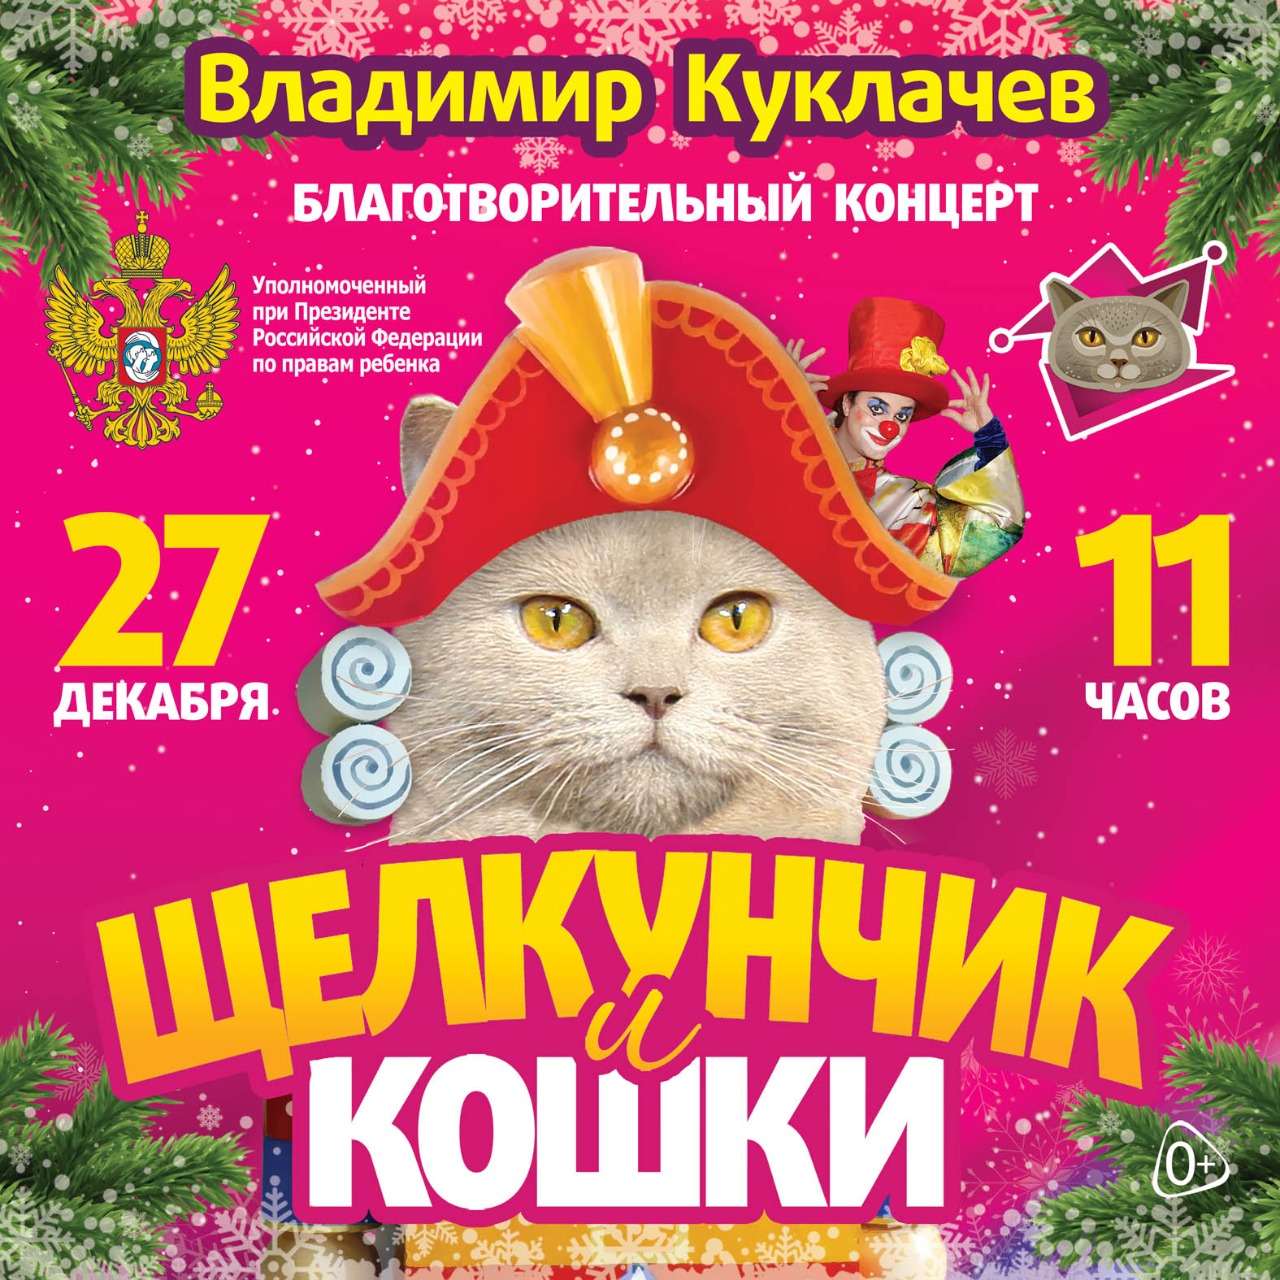 Благотворительный концерт Щелкунчик и кошки